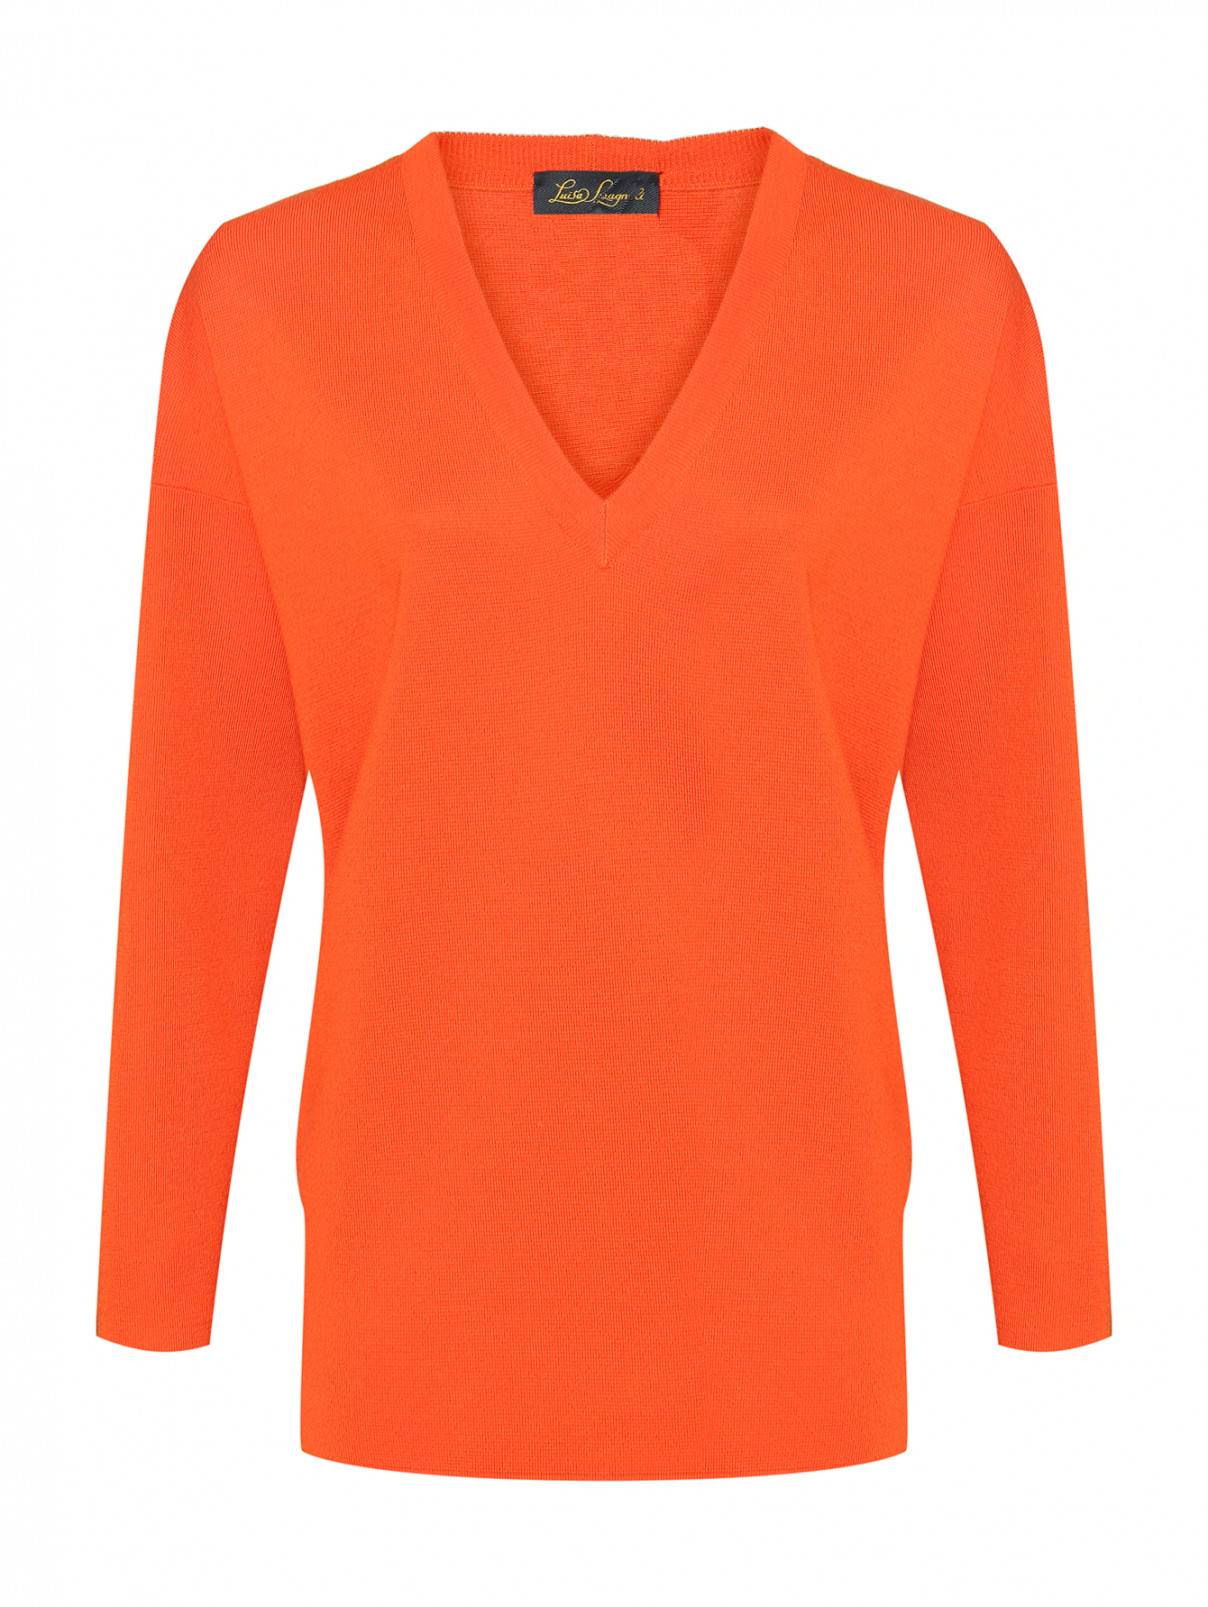 Джемпер из шерсти с V-образным вырезом и карманами Luisa Spagnoli  –  Общий вид  – Цвет:  Оранжевый